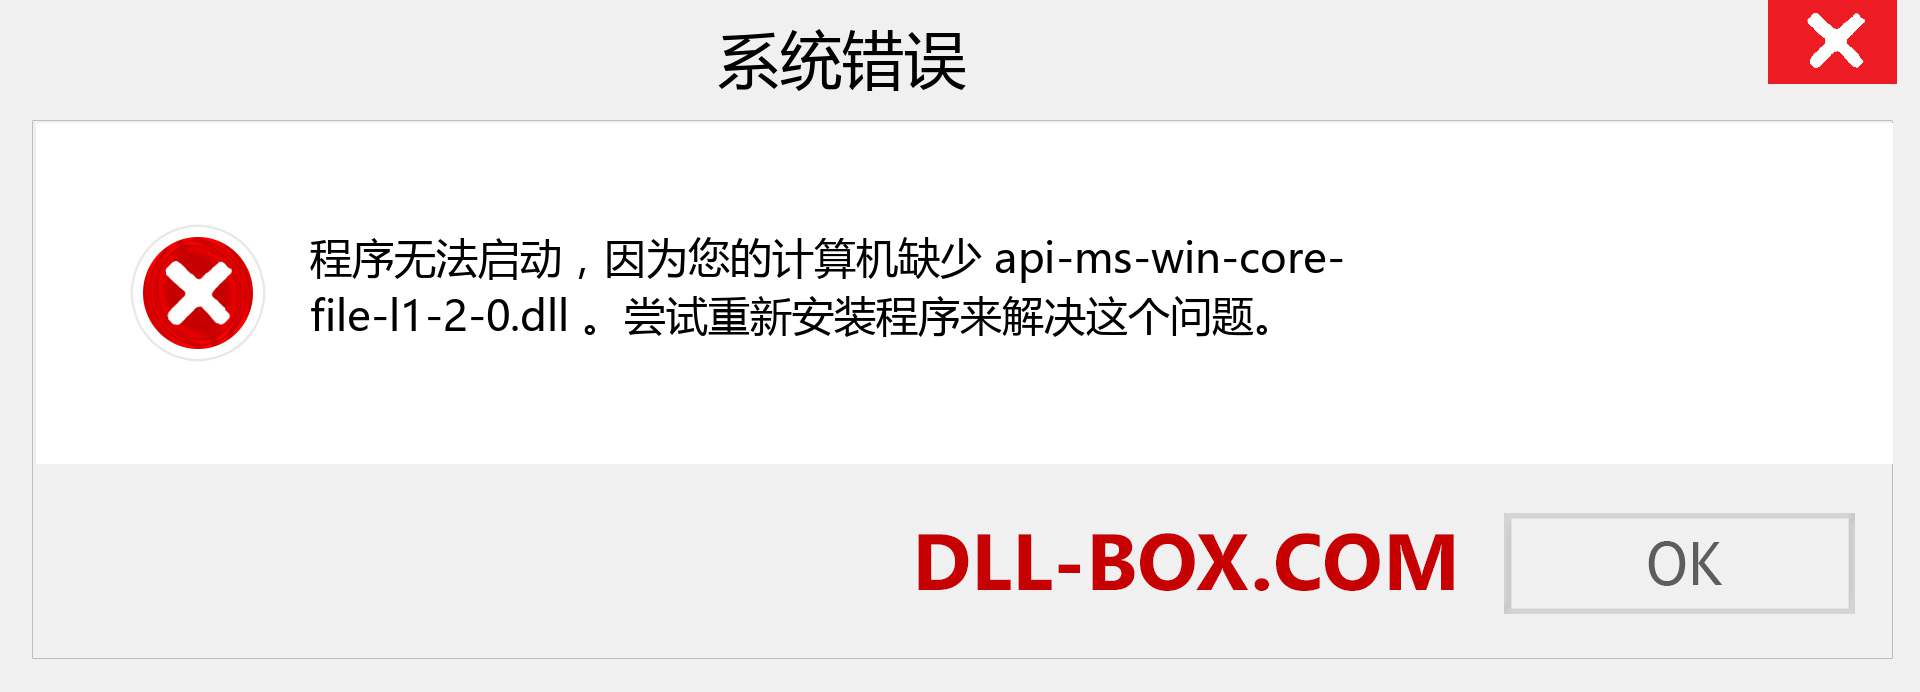 api-ms-win-core-file-l1-2-0.dll 文件丢失？。 适用于 Windows 7、8、10 的下载 - 修复 Windows、照片、图像上的 api-ms-win-core-file-l1-2-0 dll 丢失错误